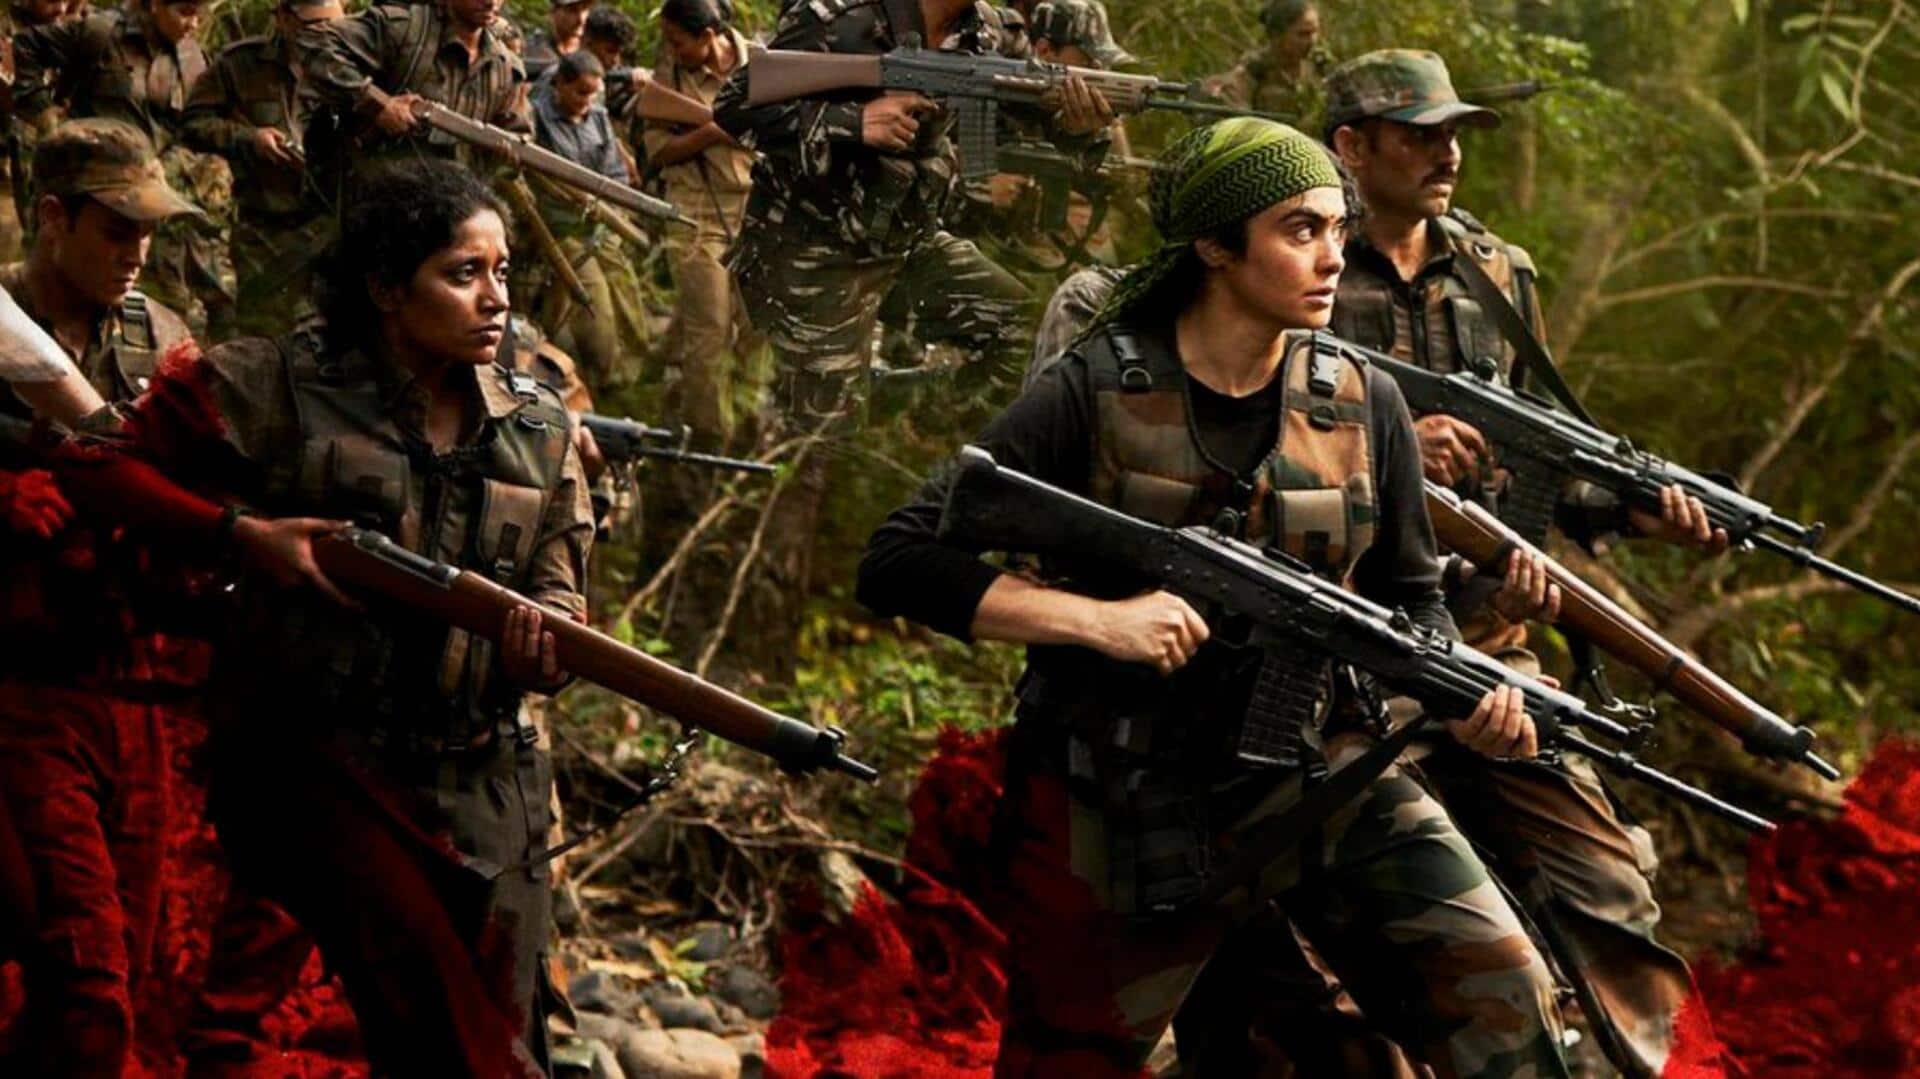 अदा शर्मा की 'बस्तर: द नक्सल स्टोरी' का टीजर जारी, जानिए कब रिलीज होगी फिल्म 